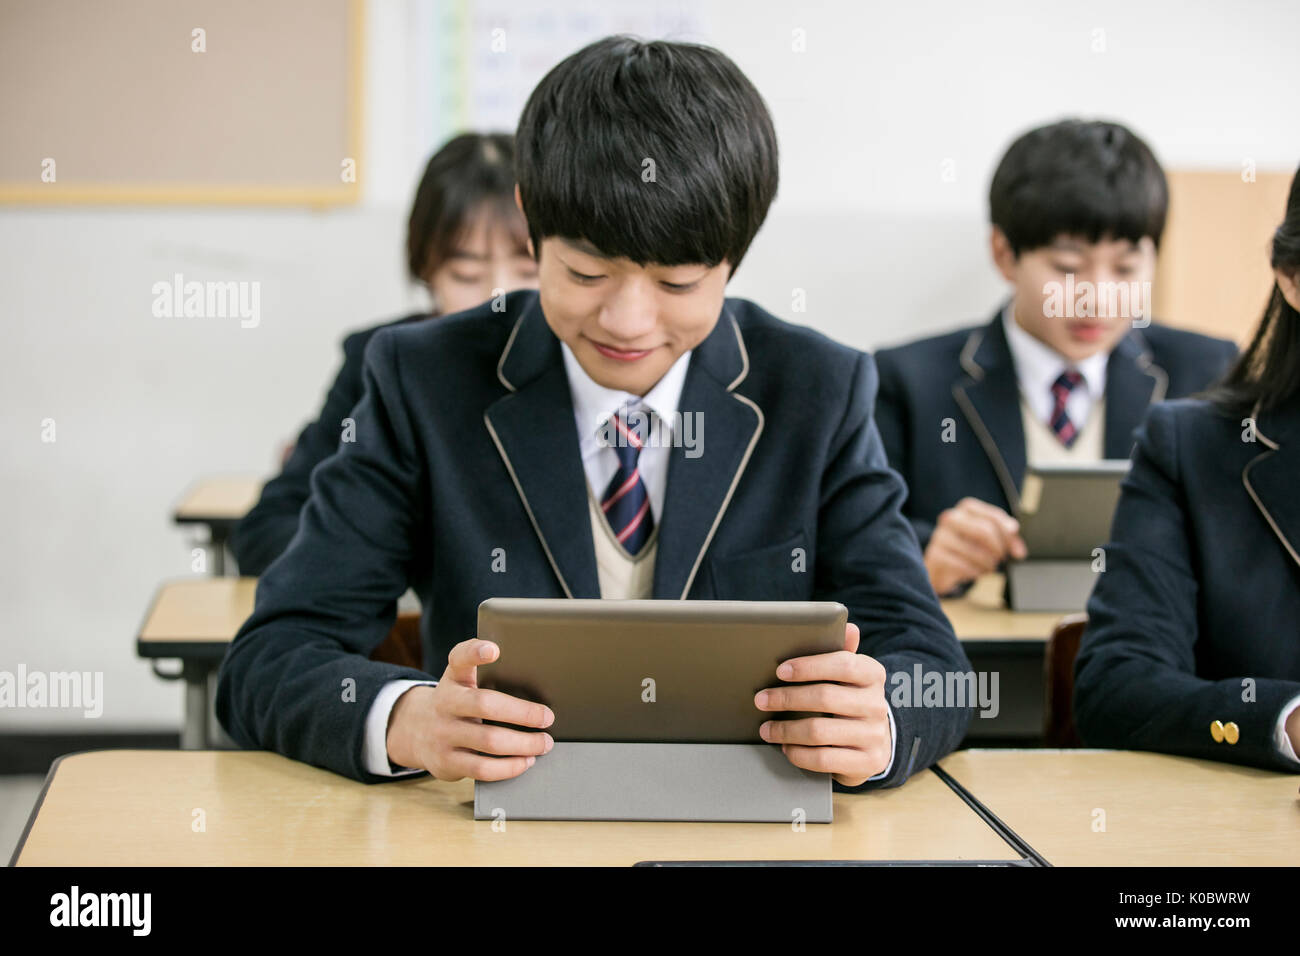 Les élèves de la classe en souriant sur tablettes électriques Banque D'Images